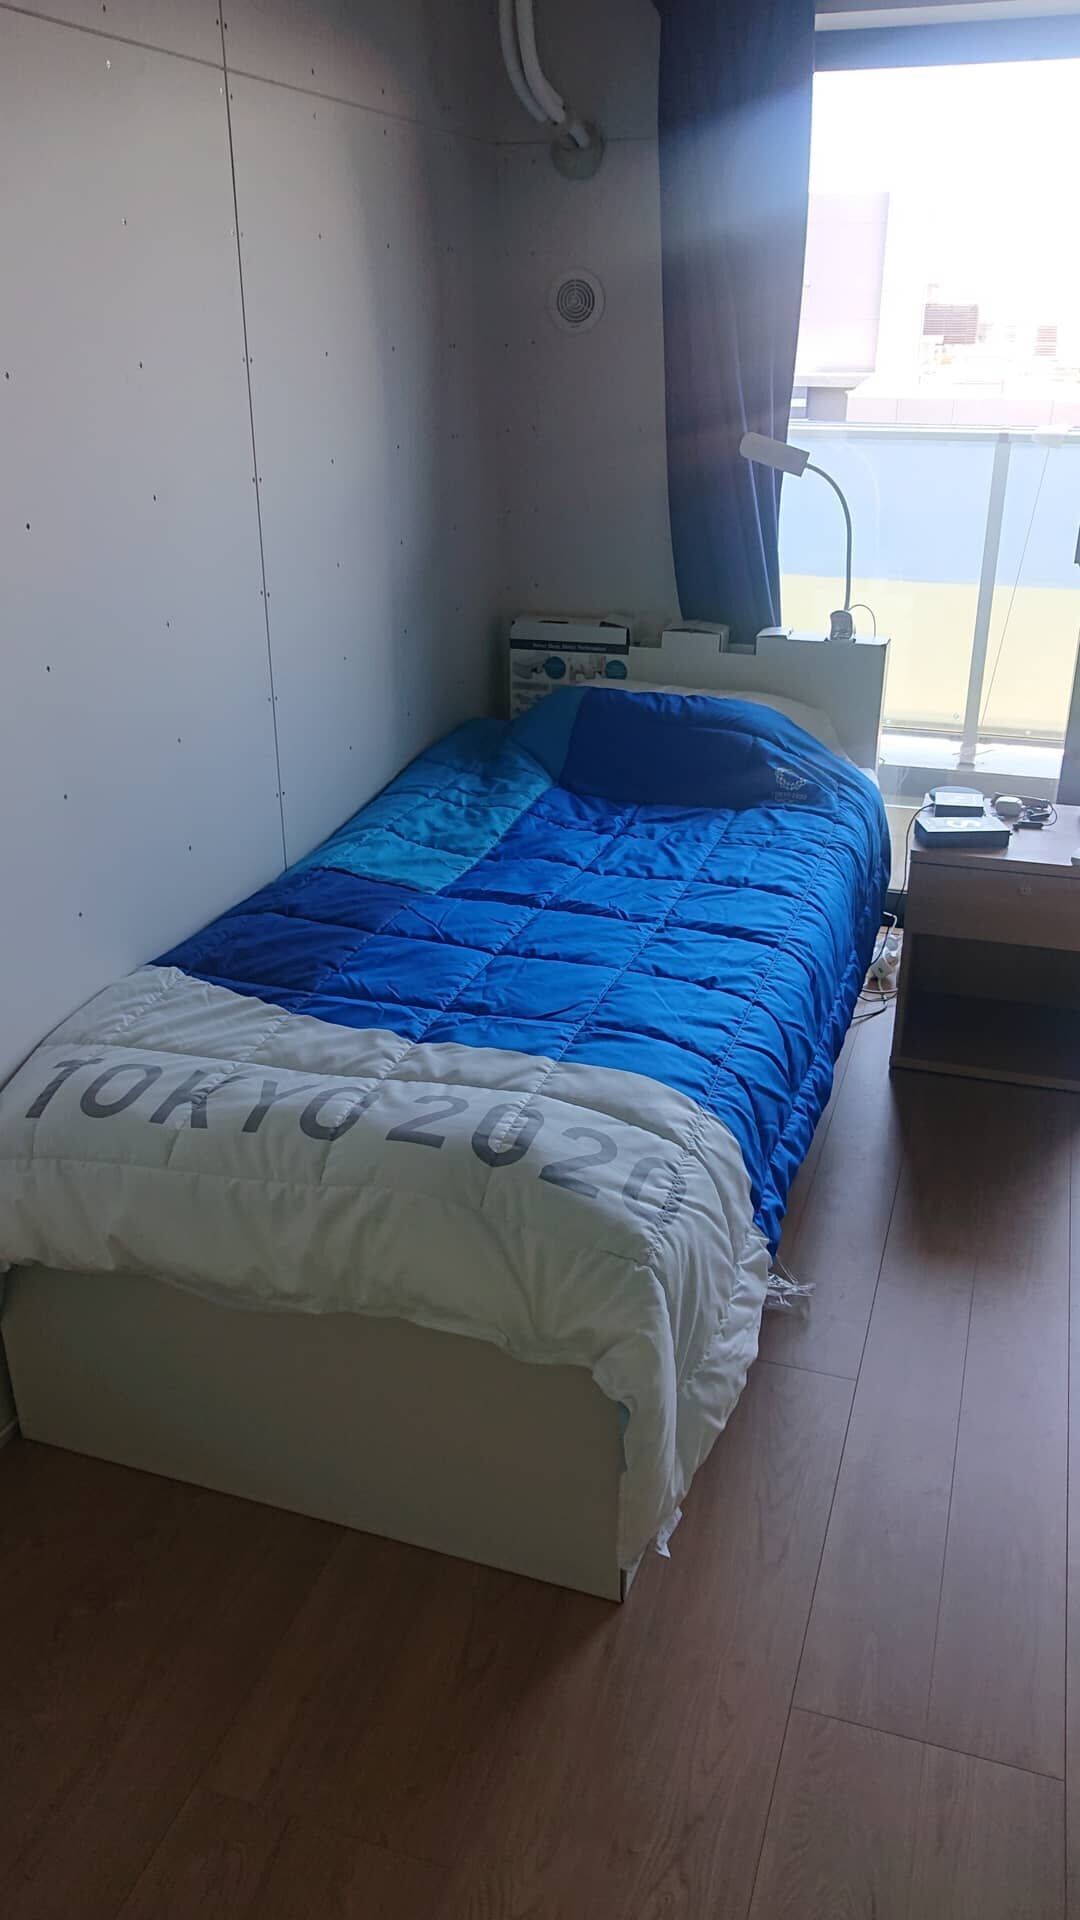 Кровать в номере олимпийцев.